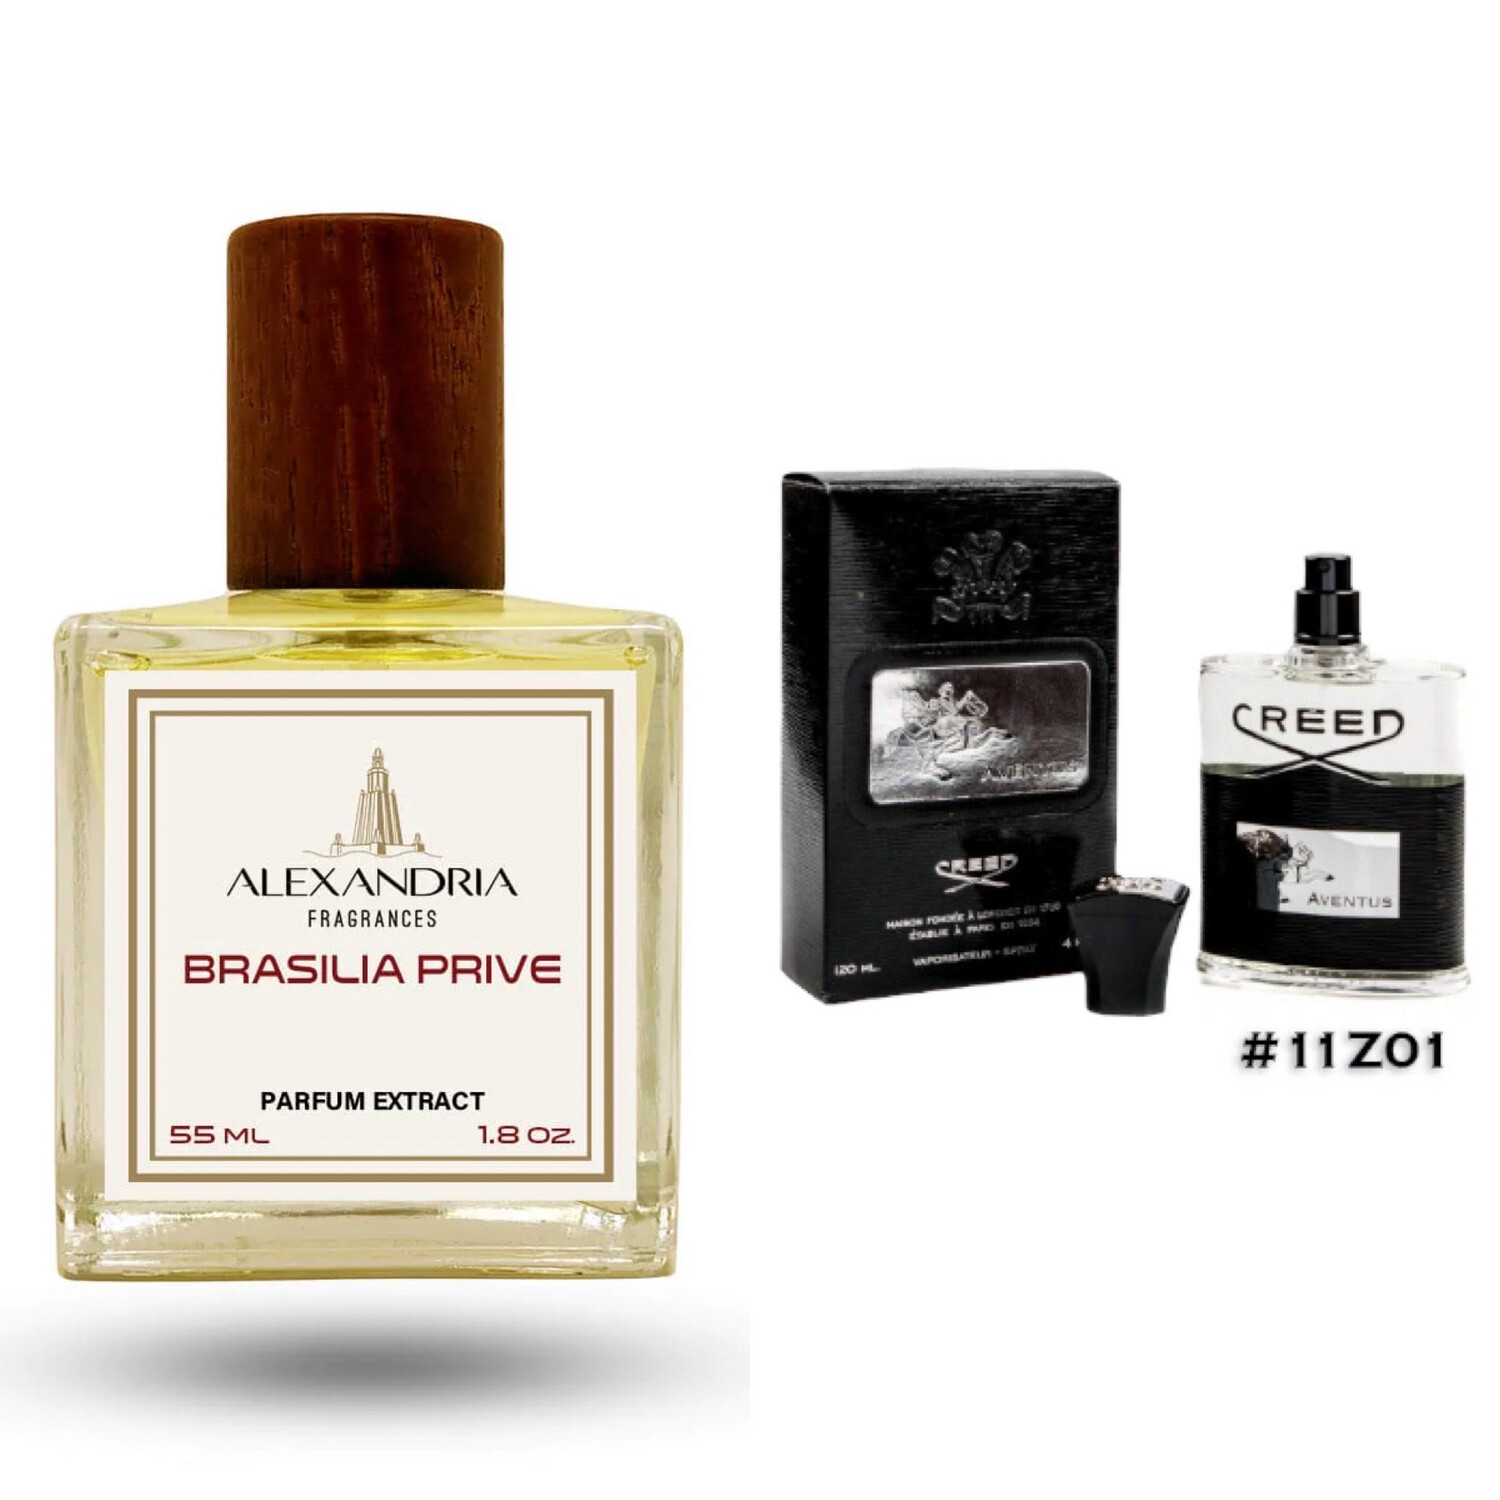 Brasilia Prive Inspirado en Creed Aventus batch 11z01 de 55ML extracto perfume Alexandria Fragrances